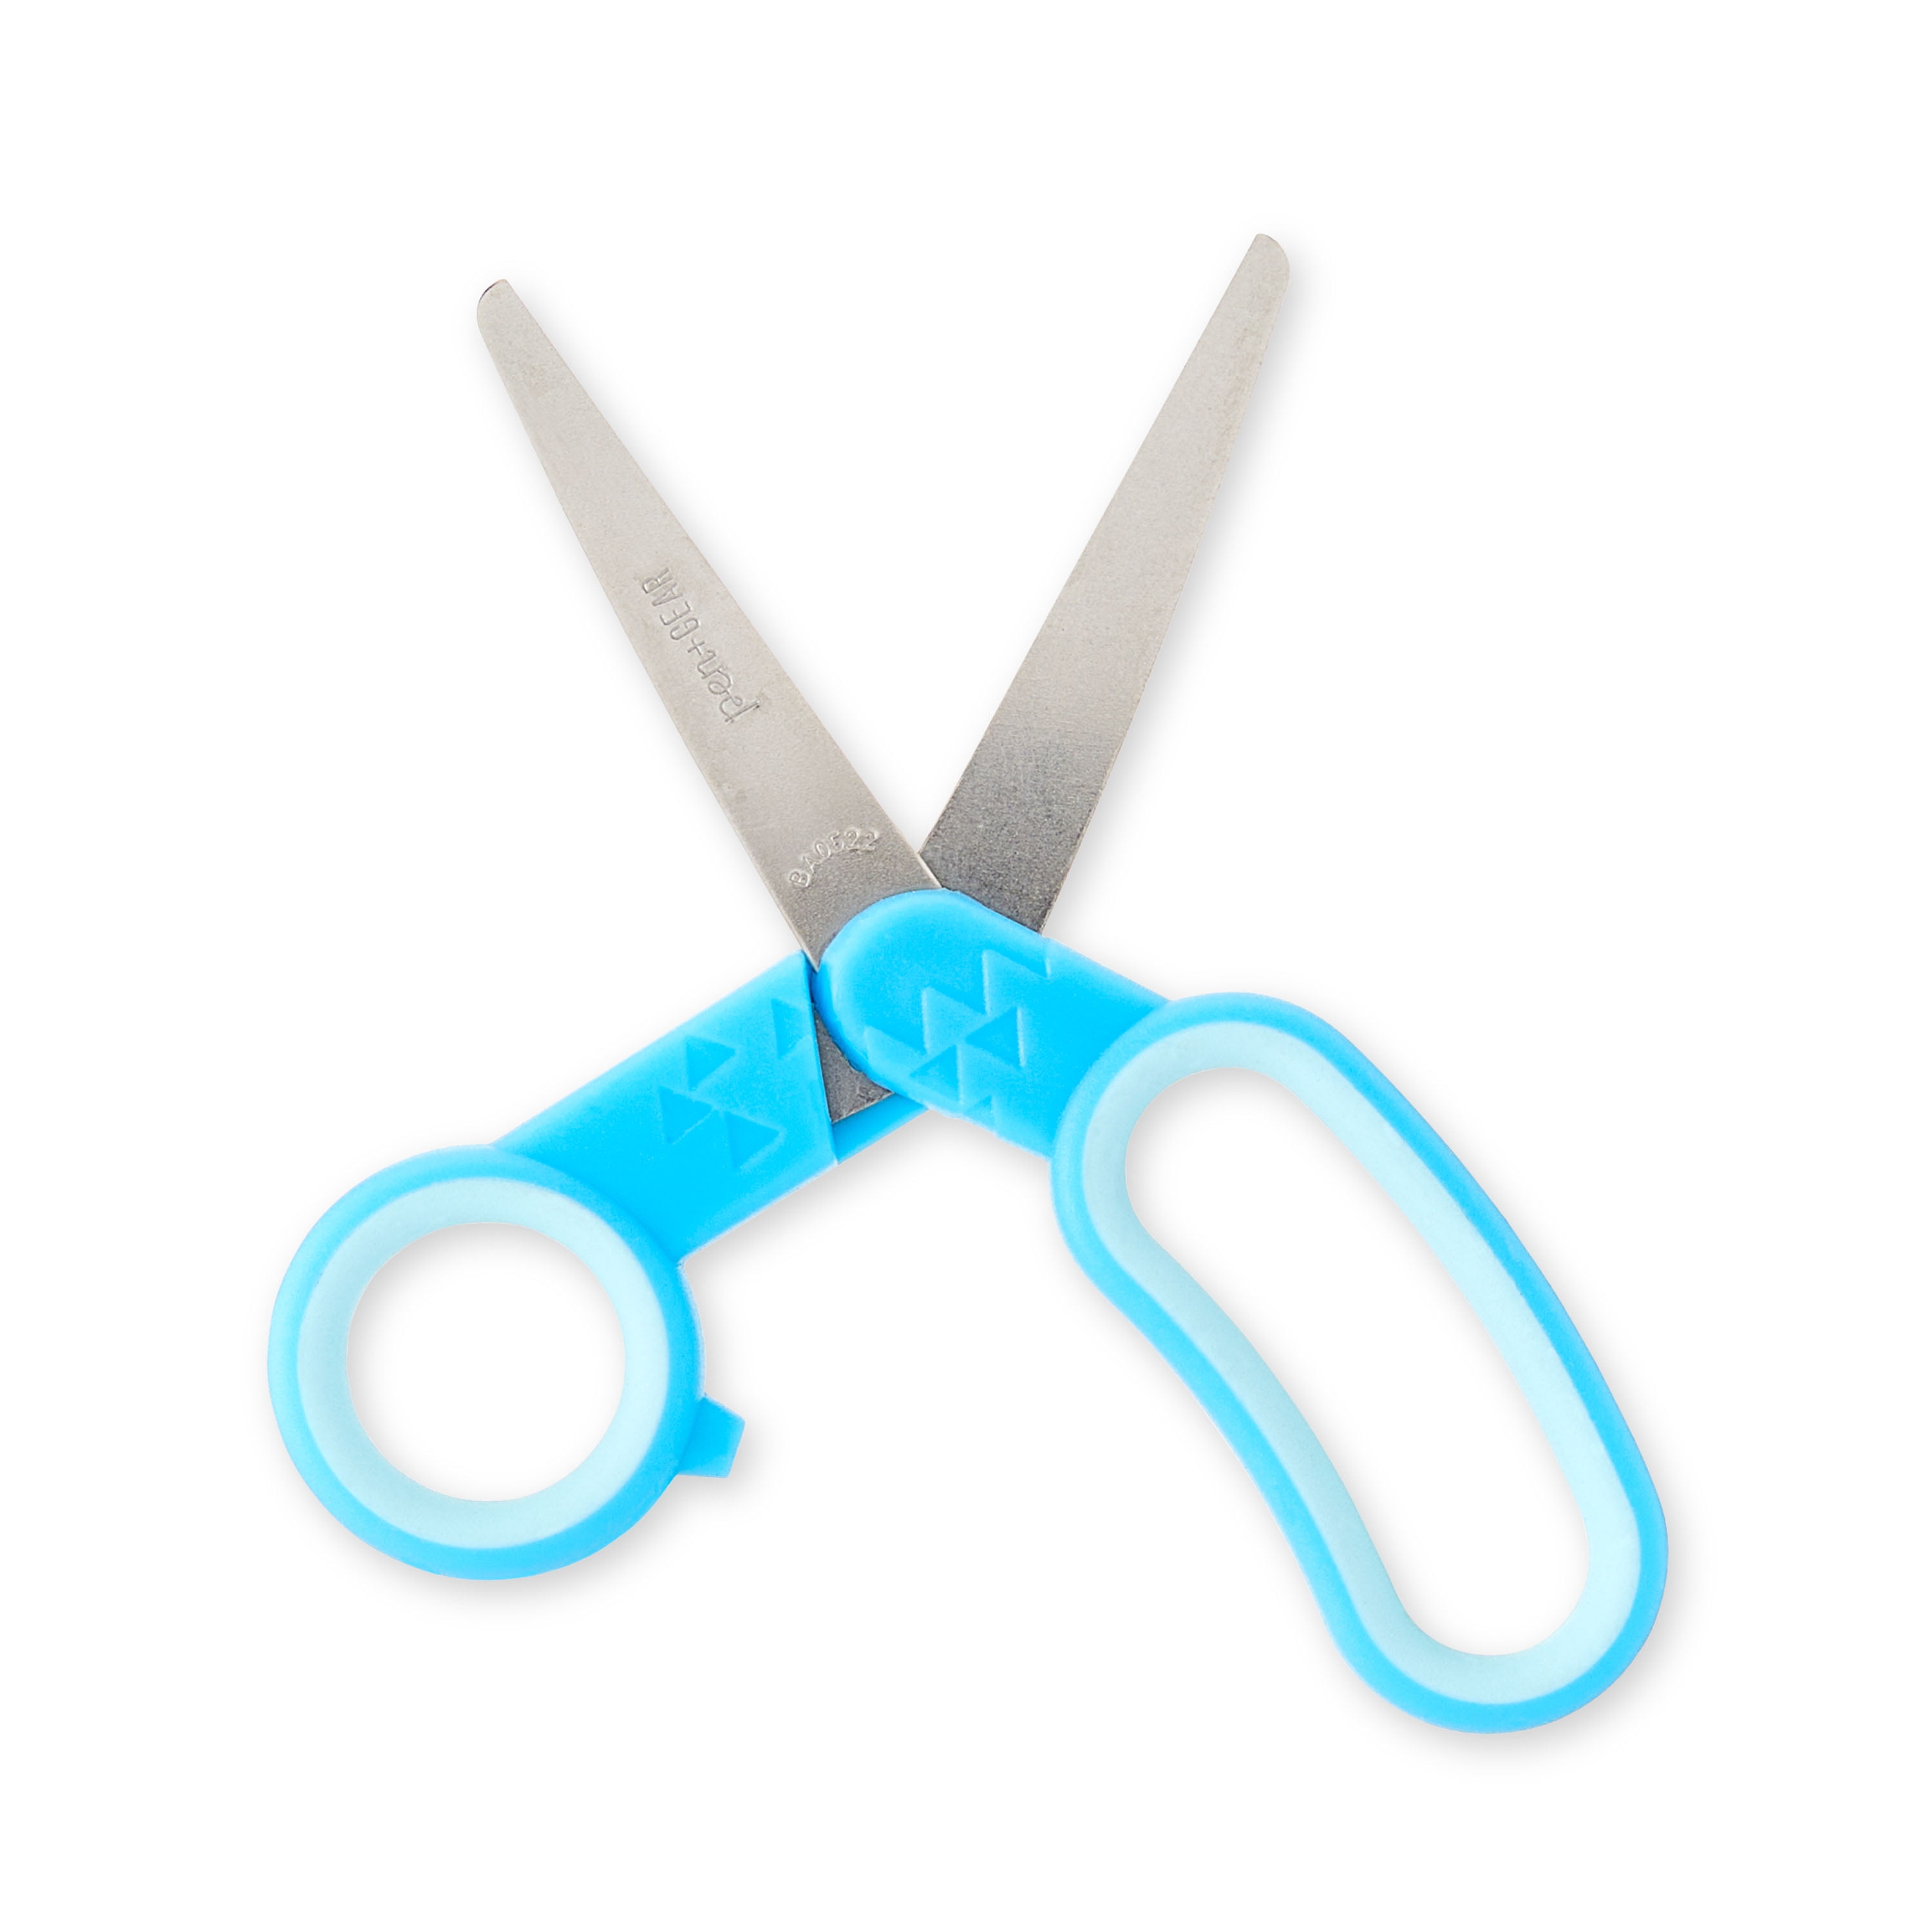 Pen Gear 5 Set of 2 Kids Scissors - New Blue Green Purple & Pink